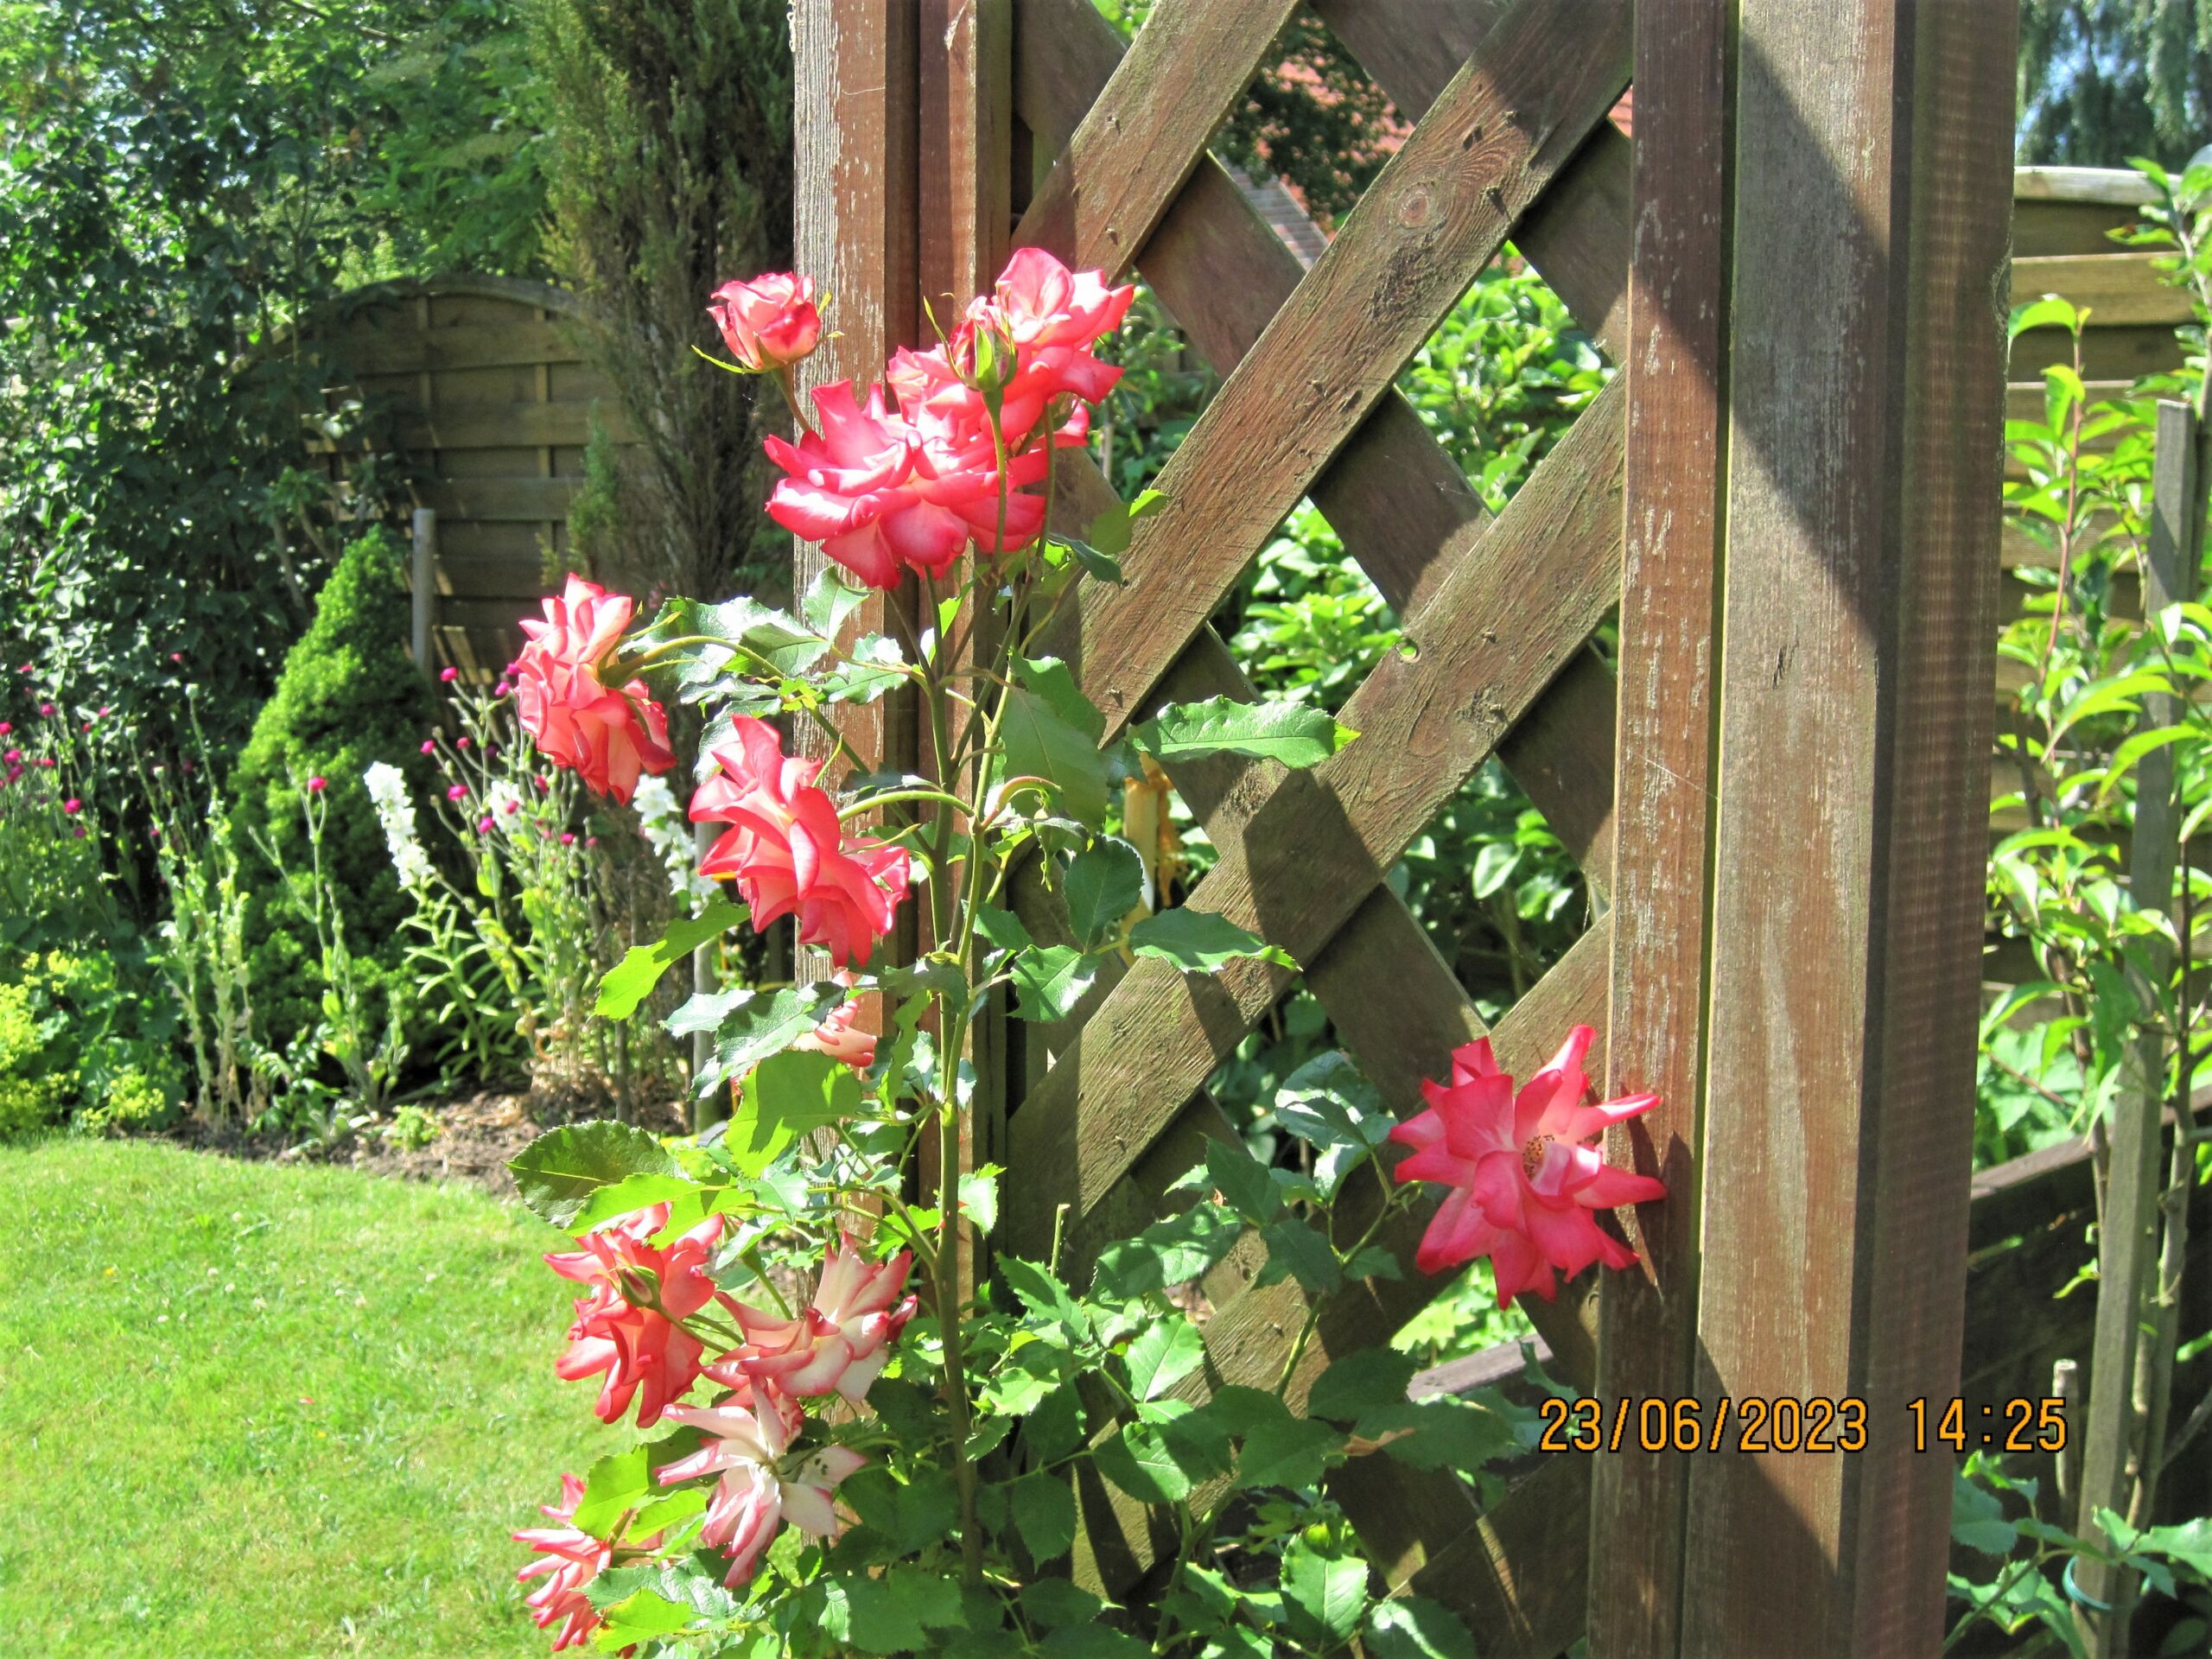 Fotos vom liebevoll gepflegten Garten mit Rosen und vielen Aufenthaltsmöglichkeiten für schöne Ferien in den Ferienwohnungen Kolks Huus in Neuharlingersiel an der Nordsee